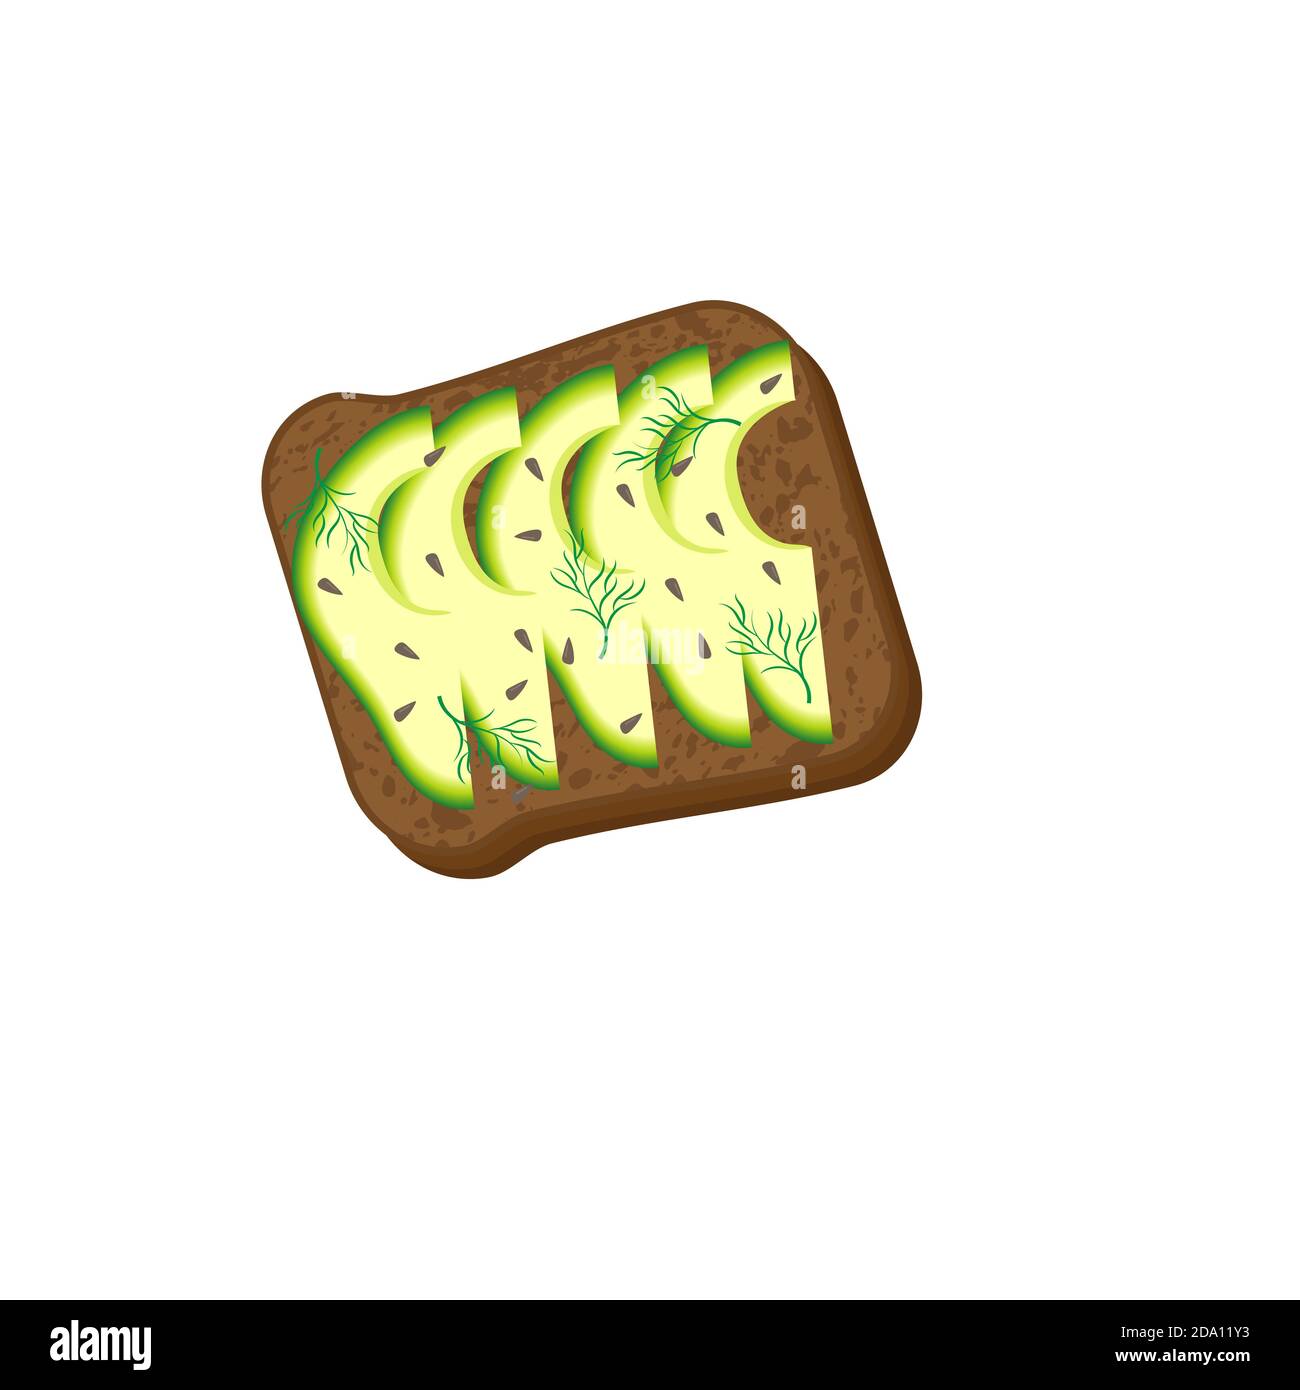 Avocado Toast. Sandwich mit Brot, Avocado, Dill und Sesam, isoliert auf weißem Hintergrund. Bio gesunde Lebensmittel. Vektorgrafik Cartoon-Illustration. Stock Vektor